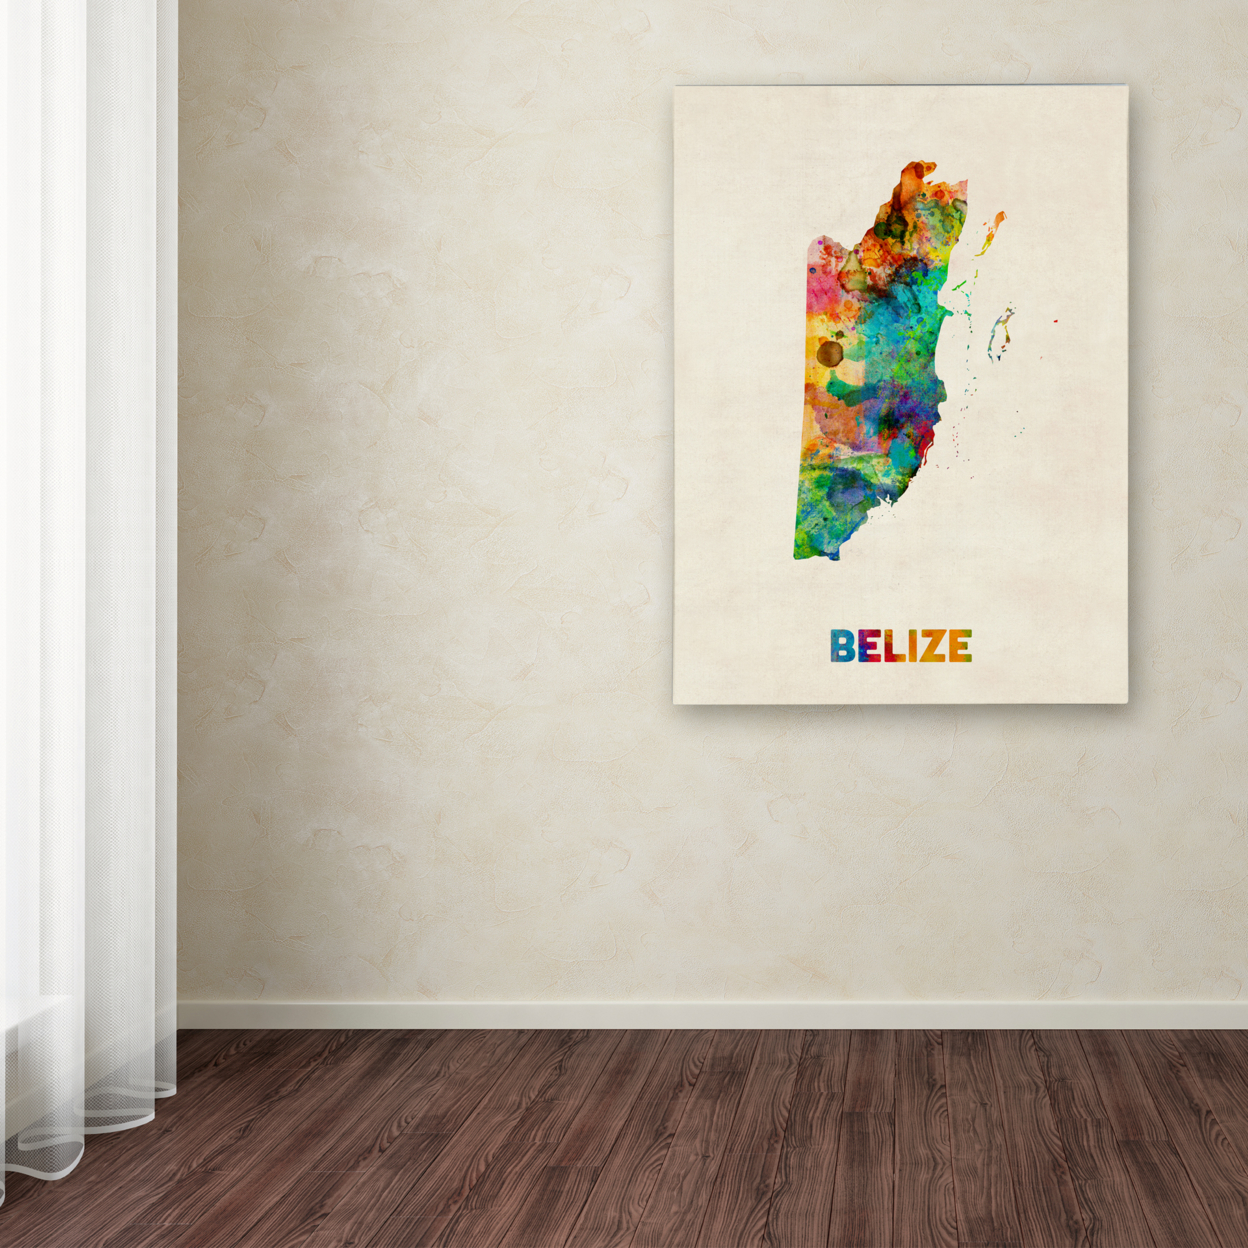 Michael Tompsett 'Belize Watercolor Map' Canvas Art 18 X 24